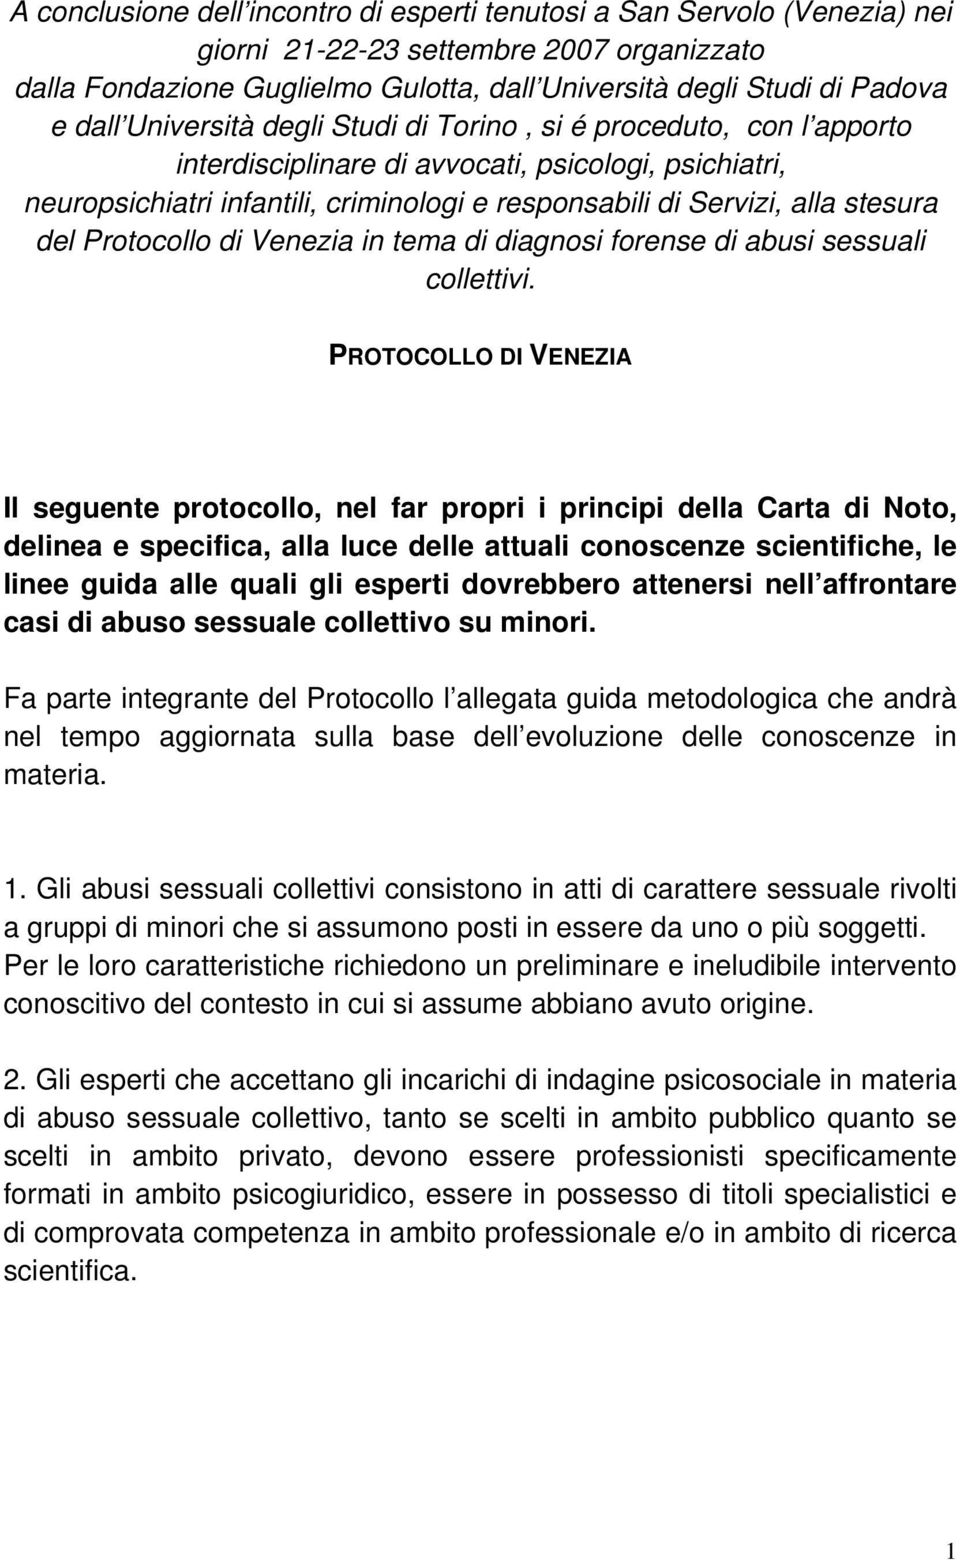 del Protocollo di Venezia in tema di diagnosi forense di abusi sessuali collettivi.